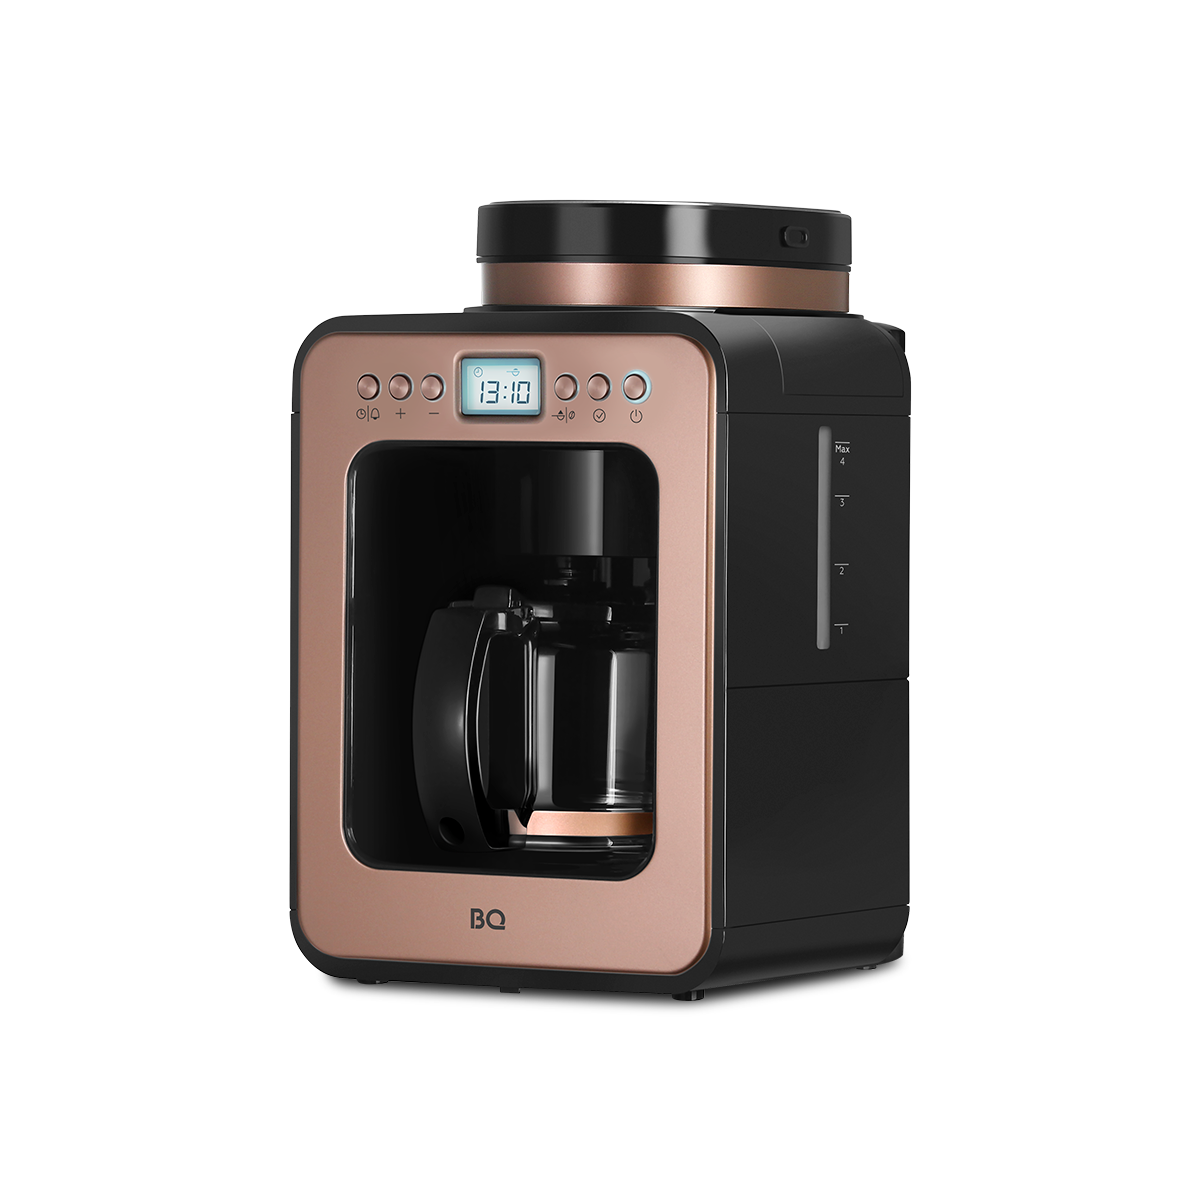 Кофеварка капельного типа BQ CM7001 золотистый, розовый, черный капельная кофеварка со встроенной кофемолкой bq cm7001 розовое золото